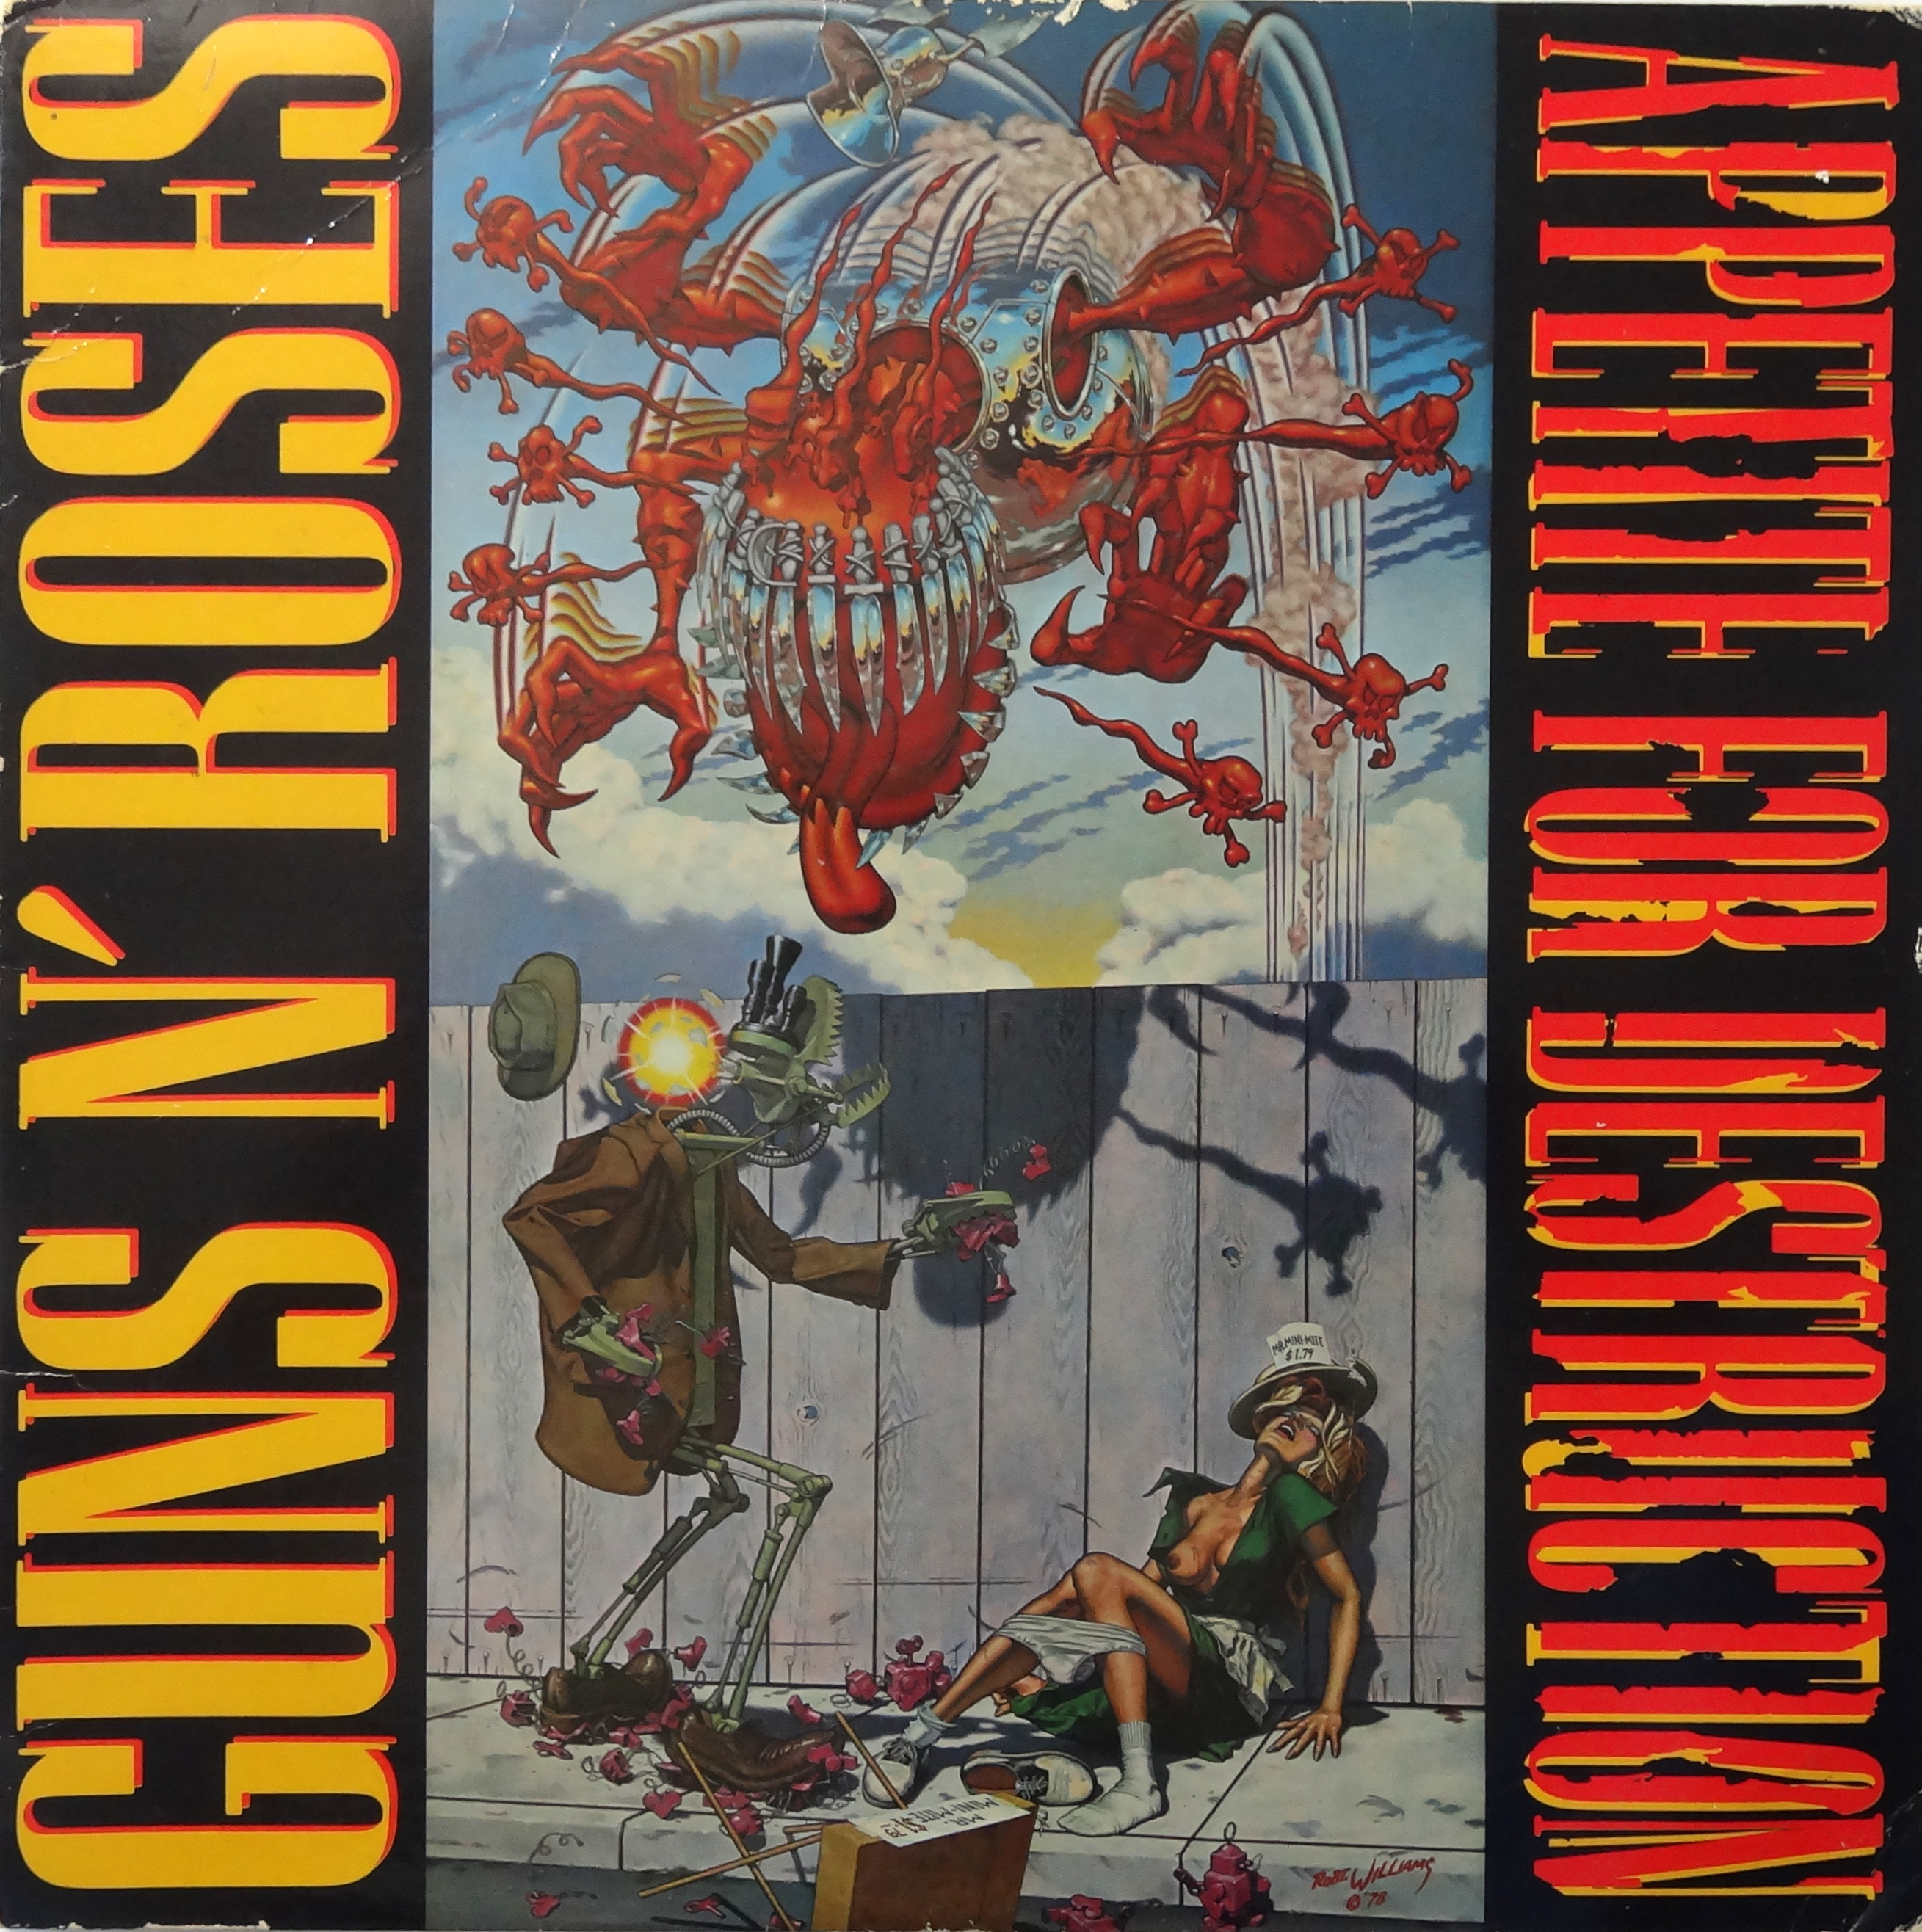 Guns N‘ Roses - Appetite for Destruction<br /><br />Mi újat lehet mondani egy olyan szó szerint klasszikusokkal teli, méltán ismert anyagról, mint az Appetite for Destruction? Minden idők egyik legsikeresebb debütlemeze még ma is odakarcol, nem csoda, hogy a Guns azóta is ezeknek a daloknak (jó, meg még a két UYI lemeznek) a farvizein evezve tölti meg az arénákat.